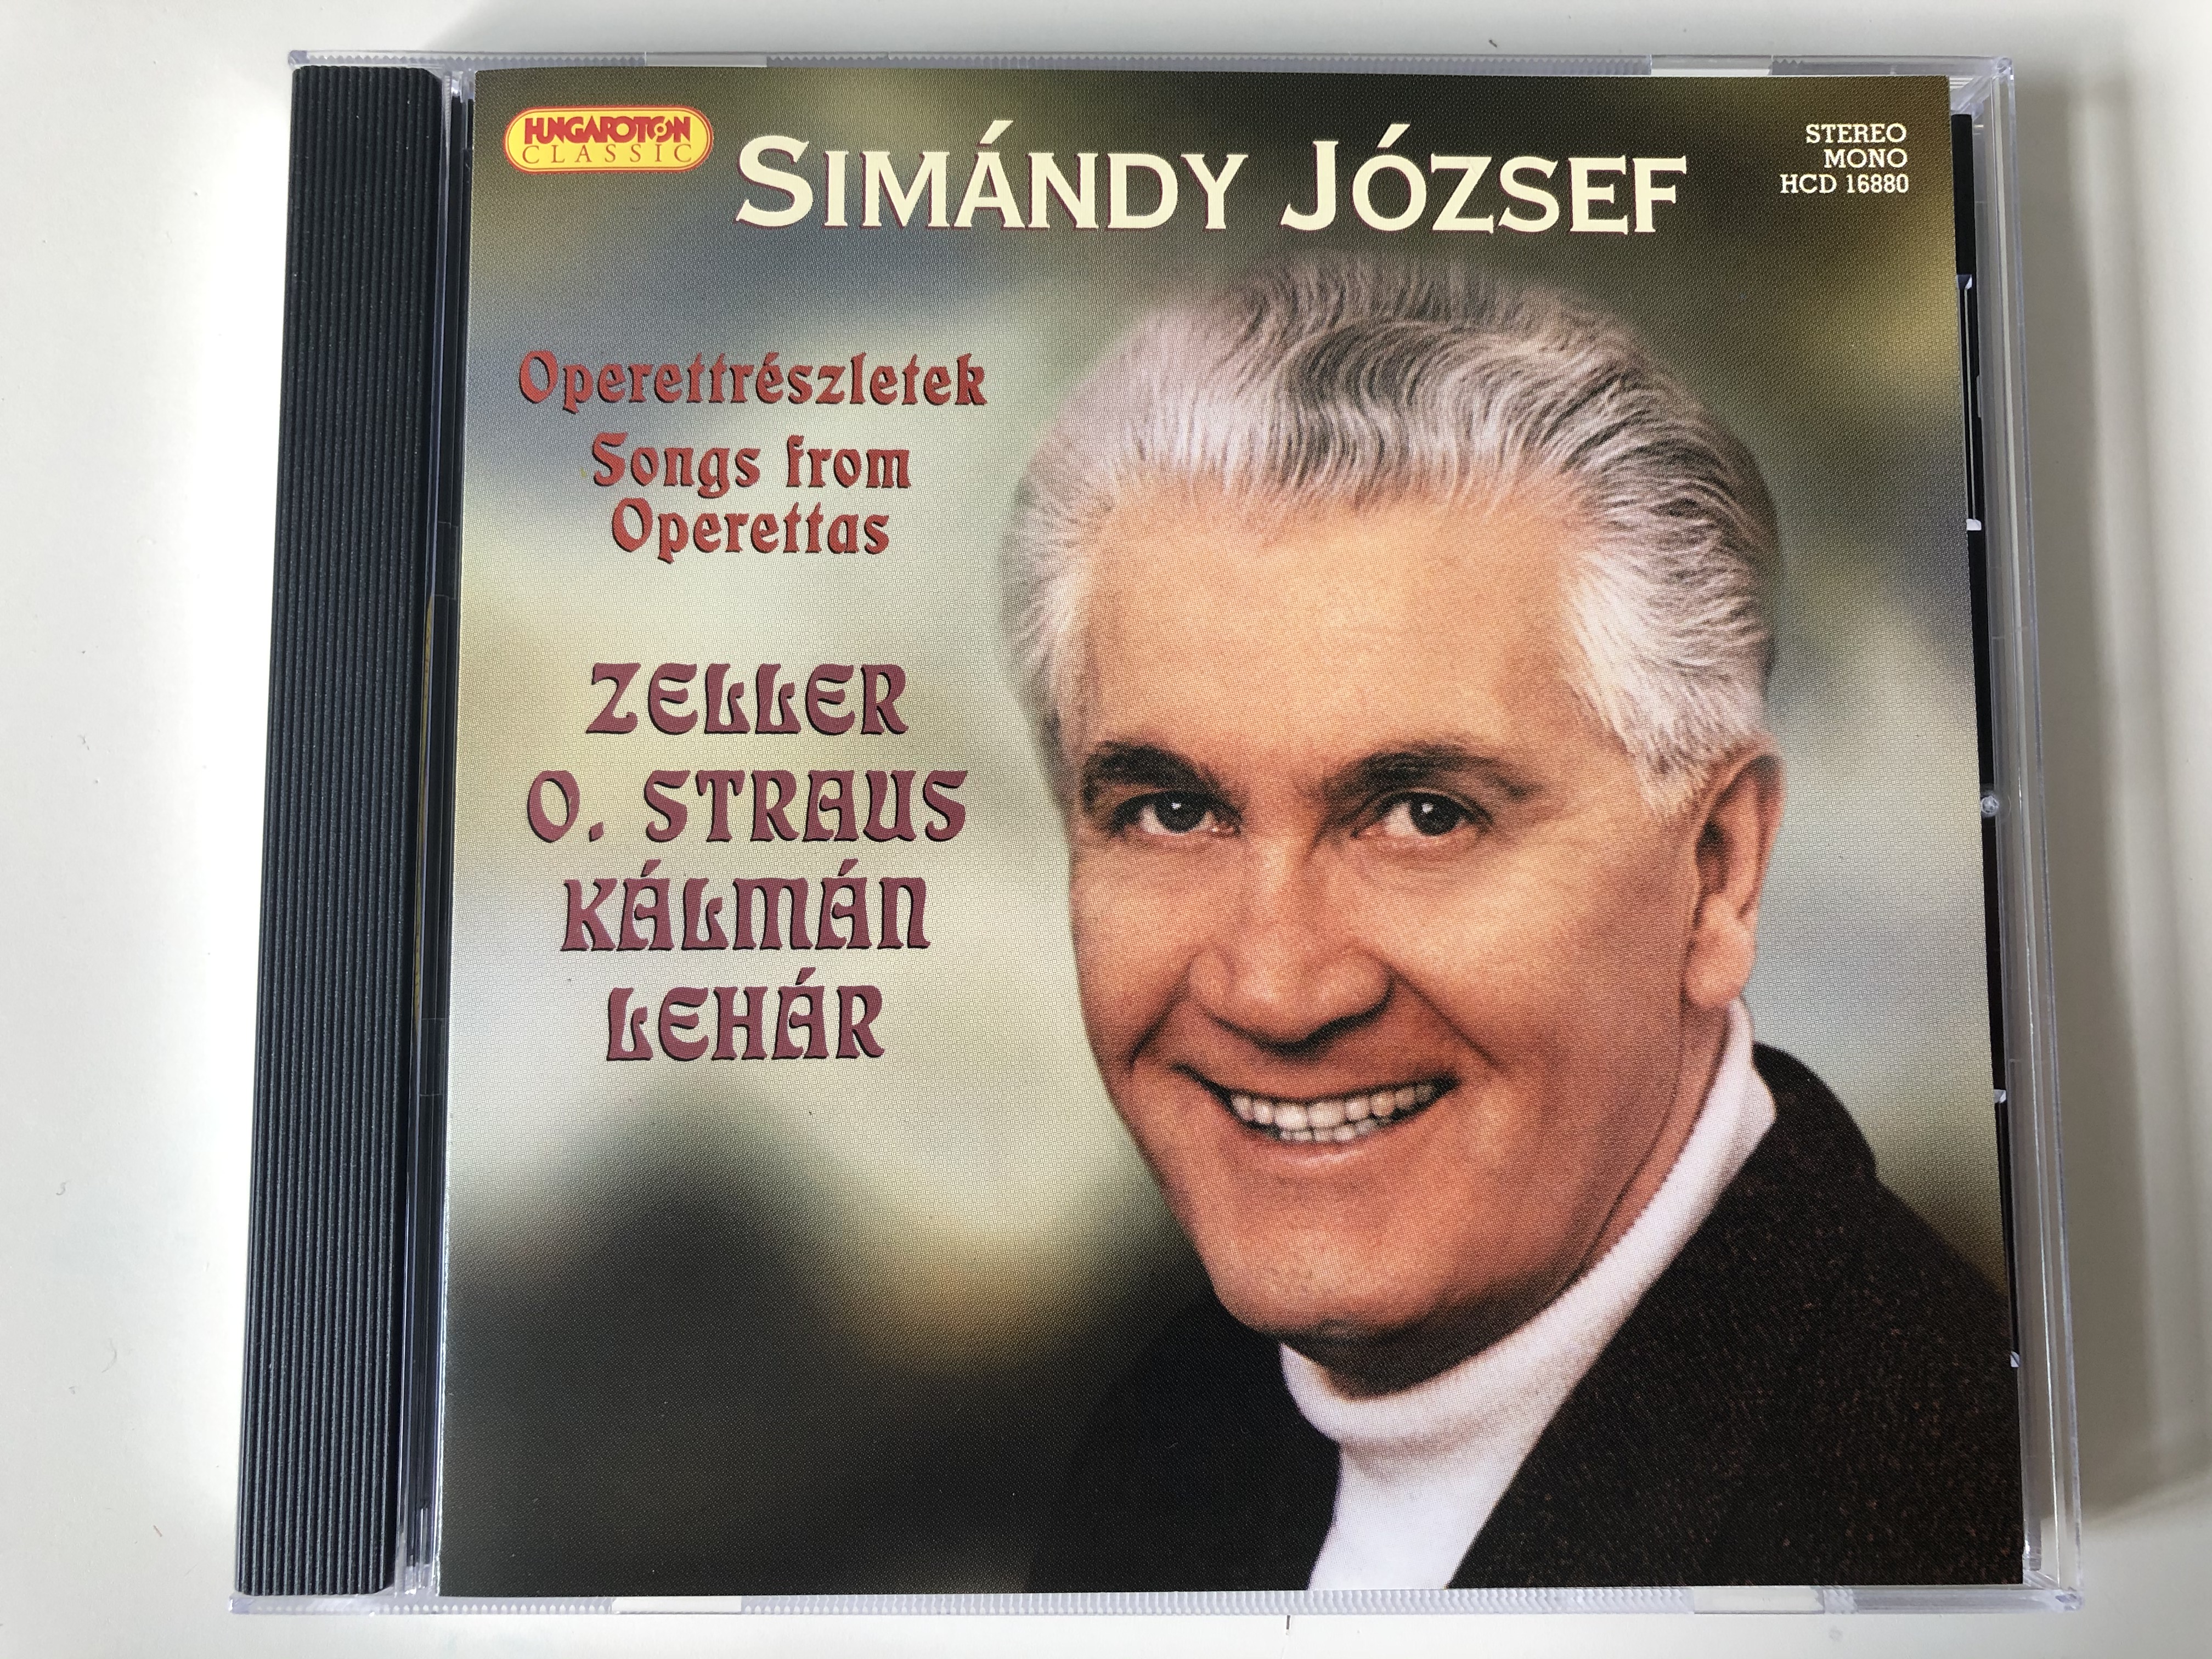 sim-ndy-j-zsef-operettr-szletek-songs-from-operettas-zeller-o.-straus-k-lm-n-leh-r-hungaroton-classic-audio-cd-2005-stereo-mono-hcd-16880-1-.jpg